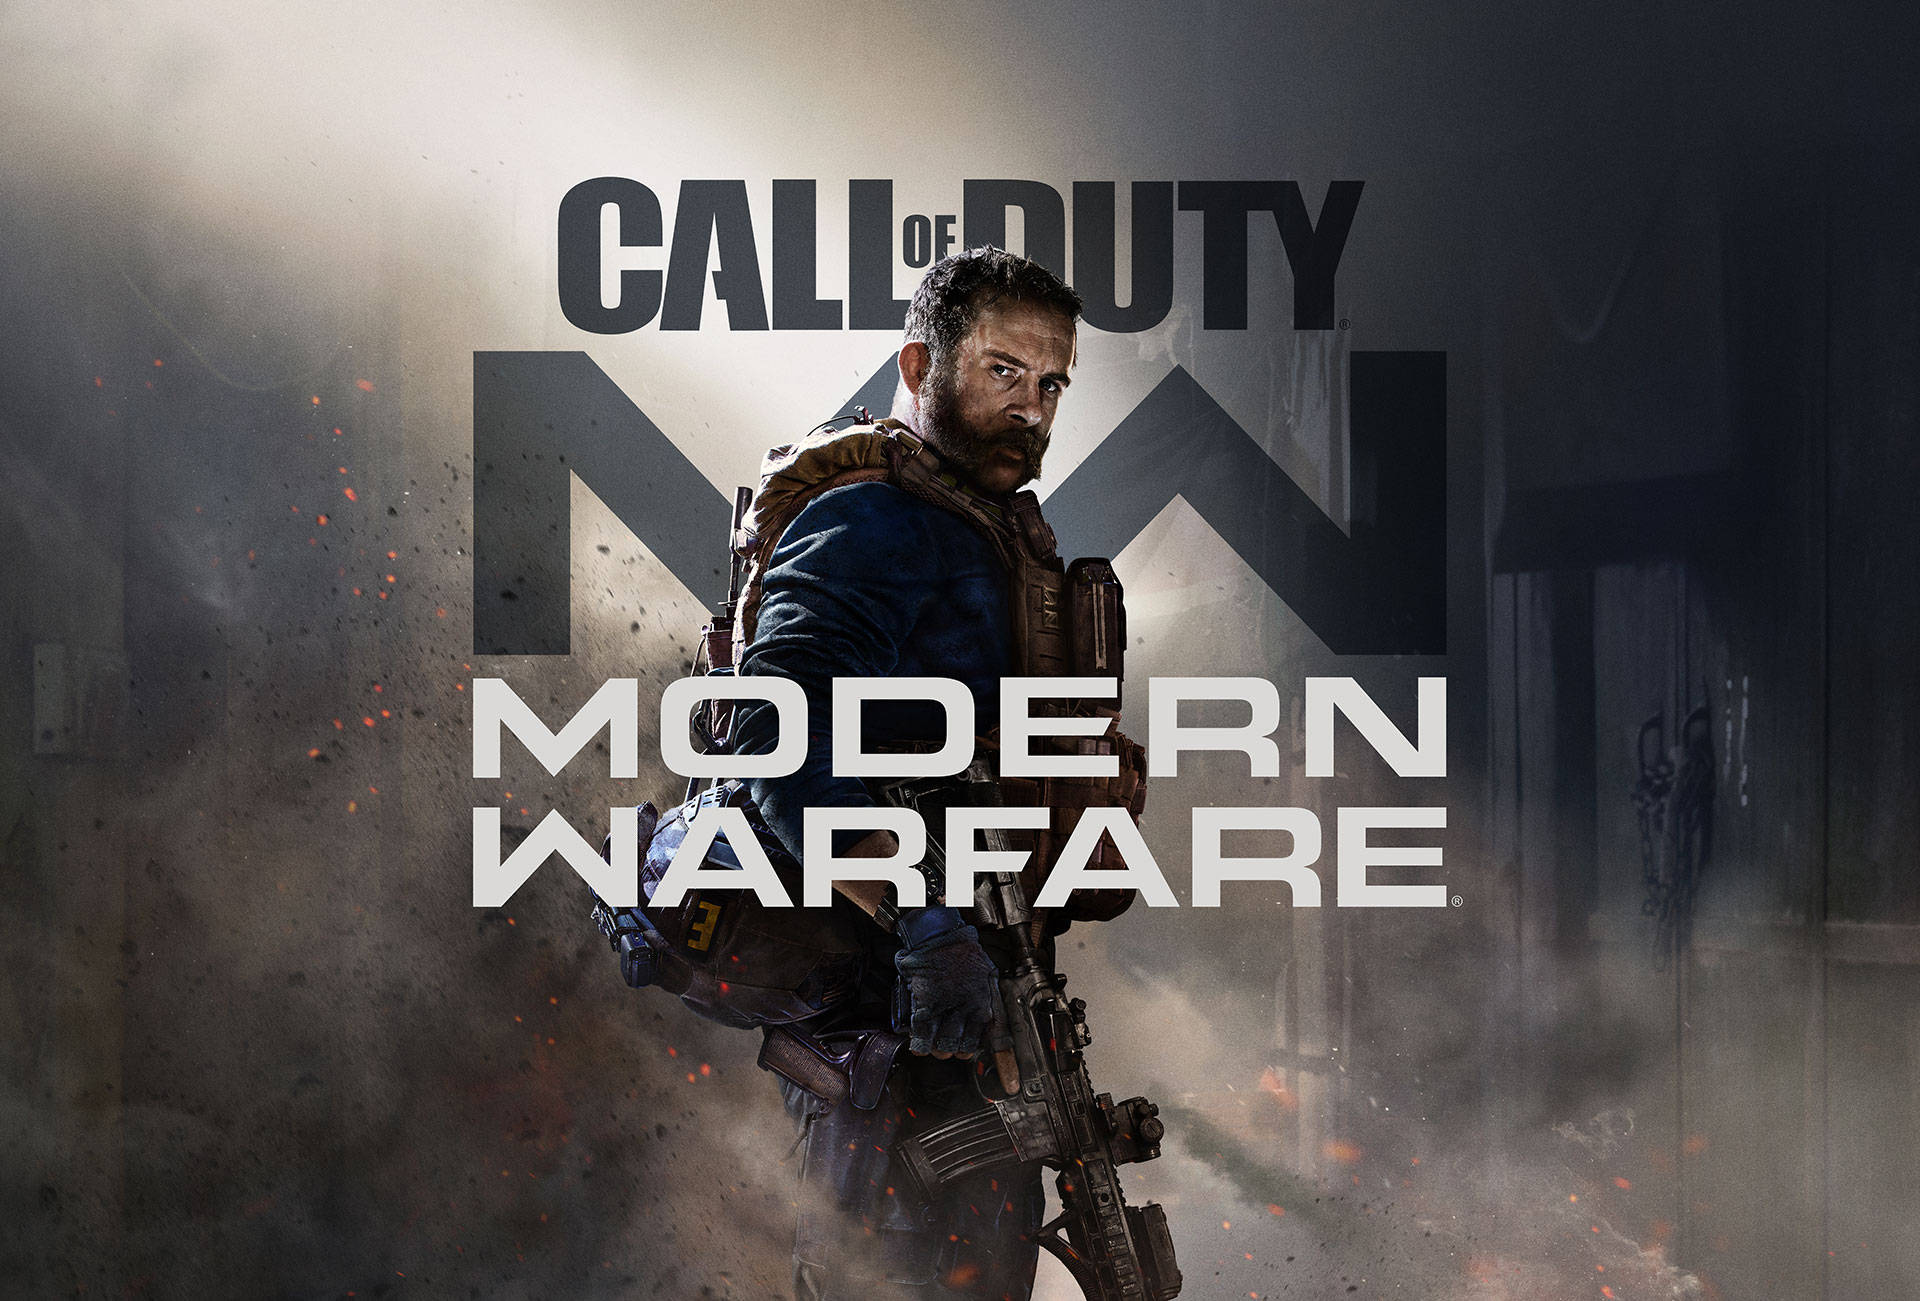 Spielensie Call Of Duty Modern Warfare Und Erleben Sie Spannende Ego-shooter-action. Wallpaper